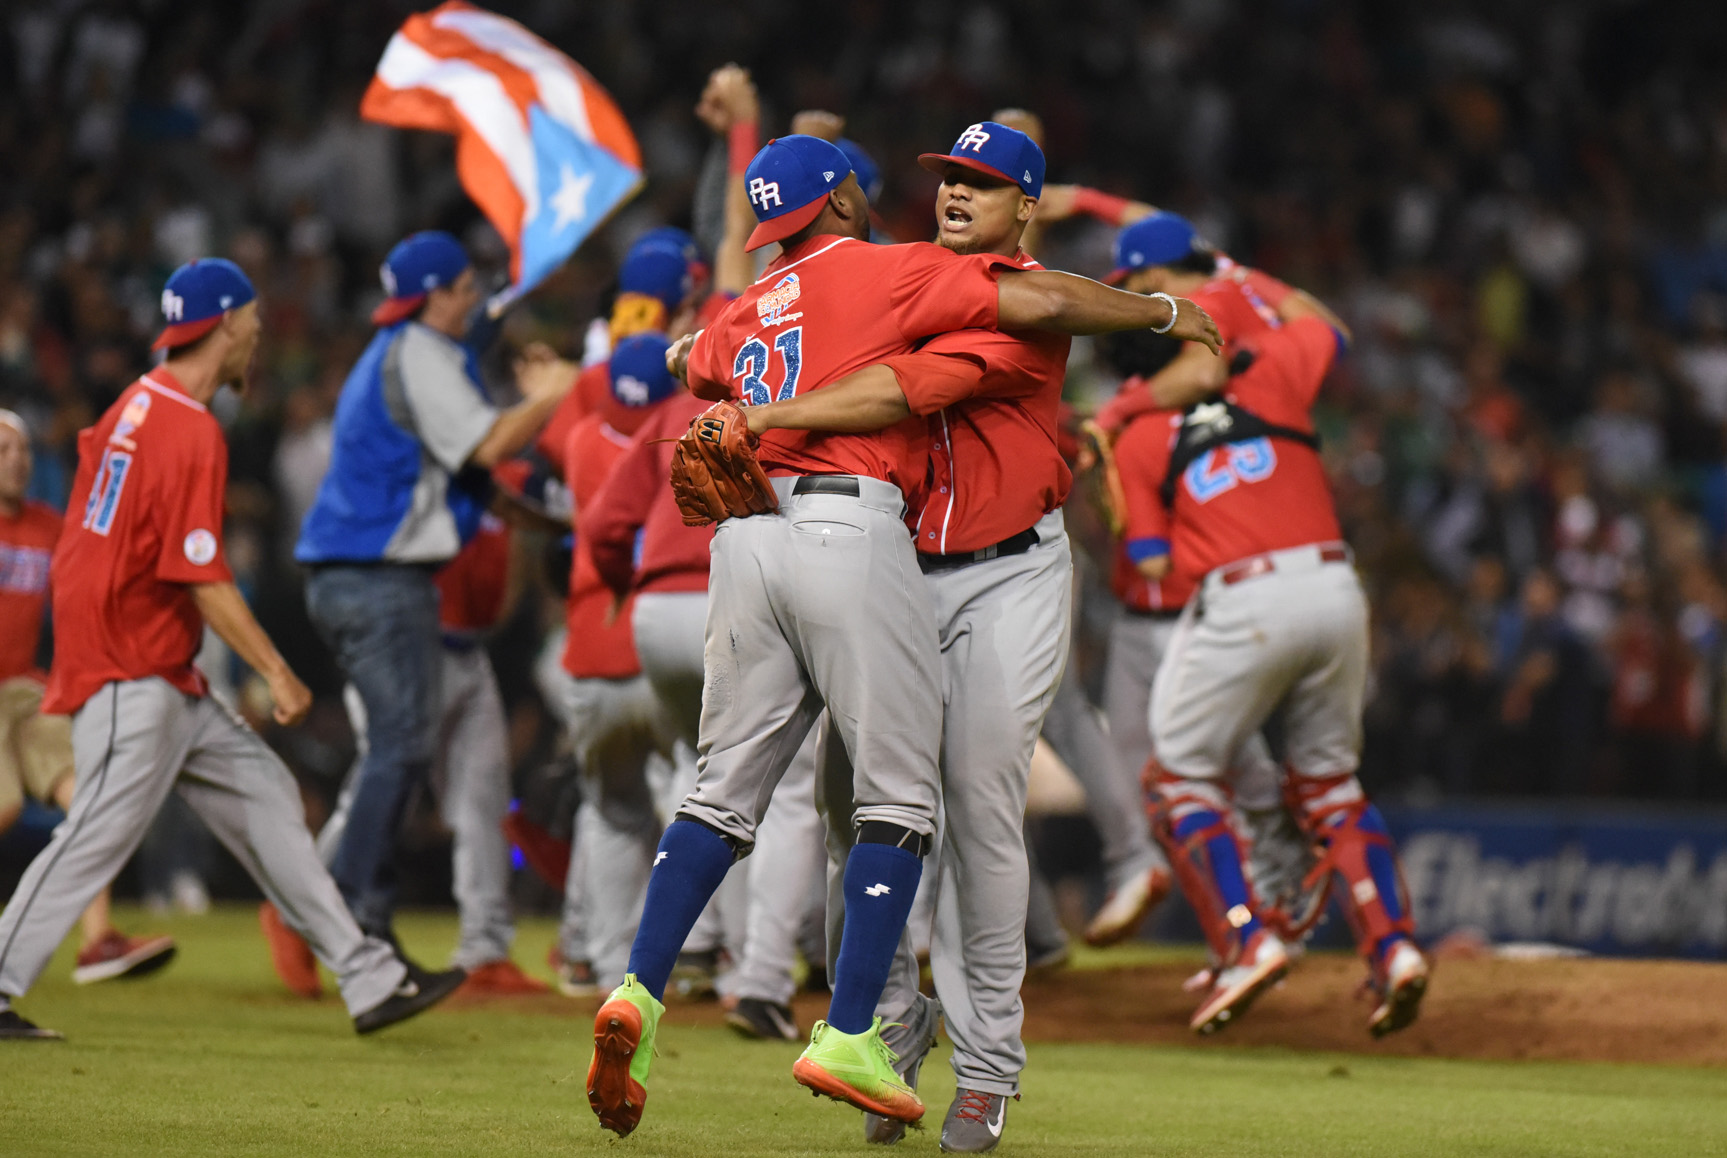 wp image 3548 - Campeones defensores Criollos lideran puntero Liga de Béisbol de Puerto Rico